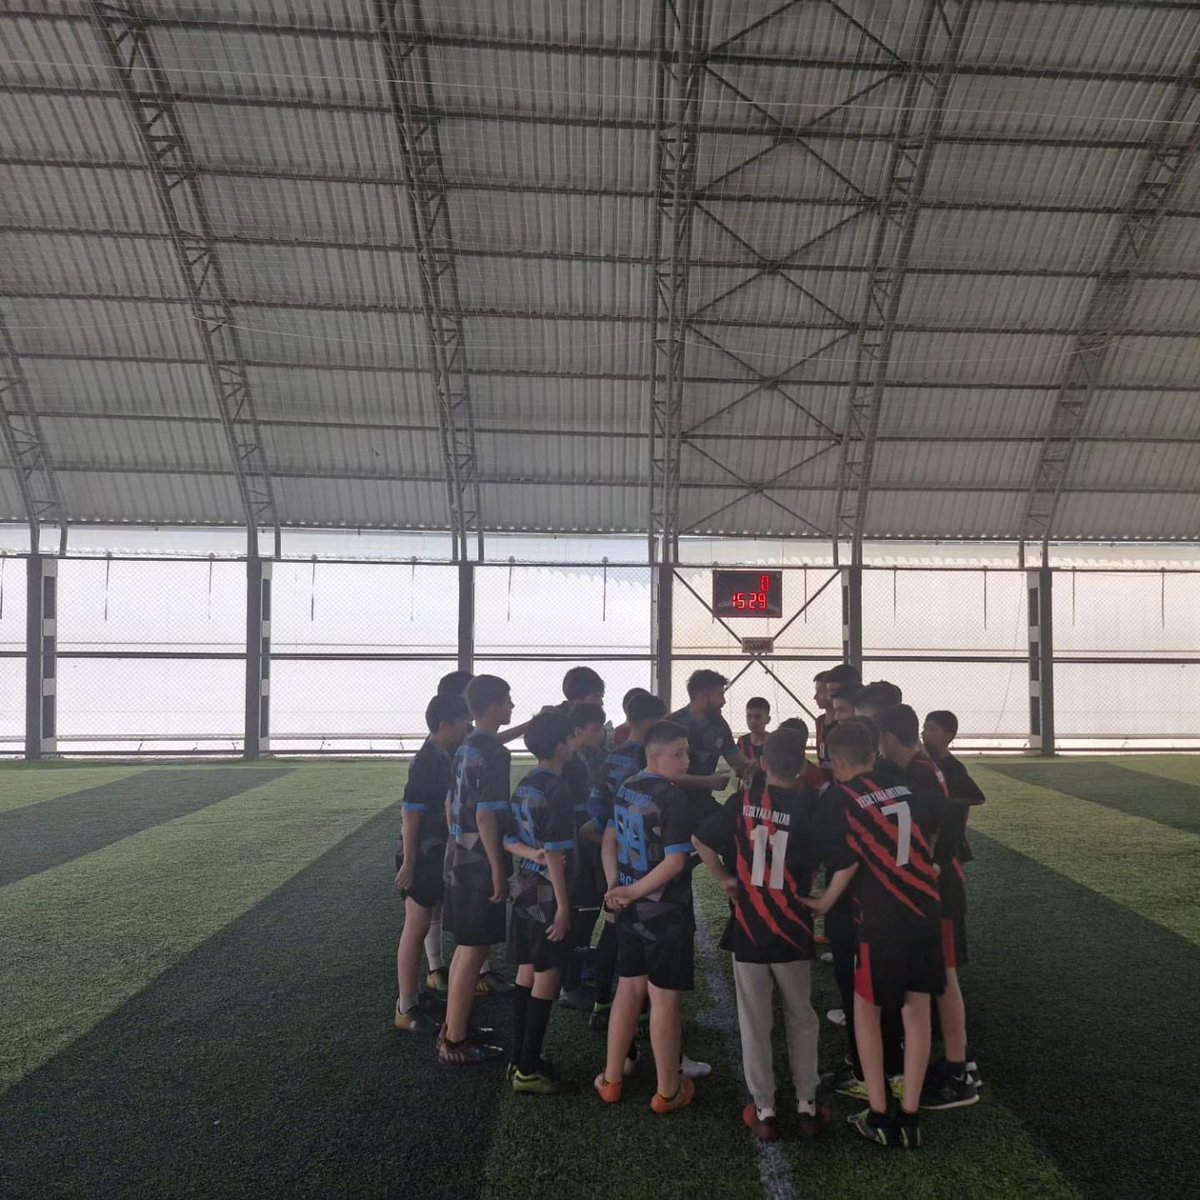 ÇEDES projesi kapsamında Celal Yenitur Ortaokulu ve Yeşilyurt Yeşilyaka Ortaokulu arasında futbol müsabakası yapıldı. Kazanan dostluk oldu. @tcmeb @MalatyaMem @behcet_bakir